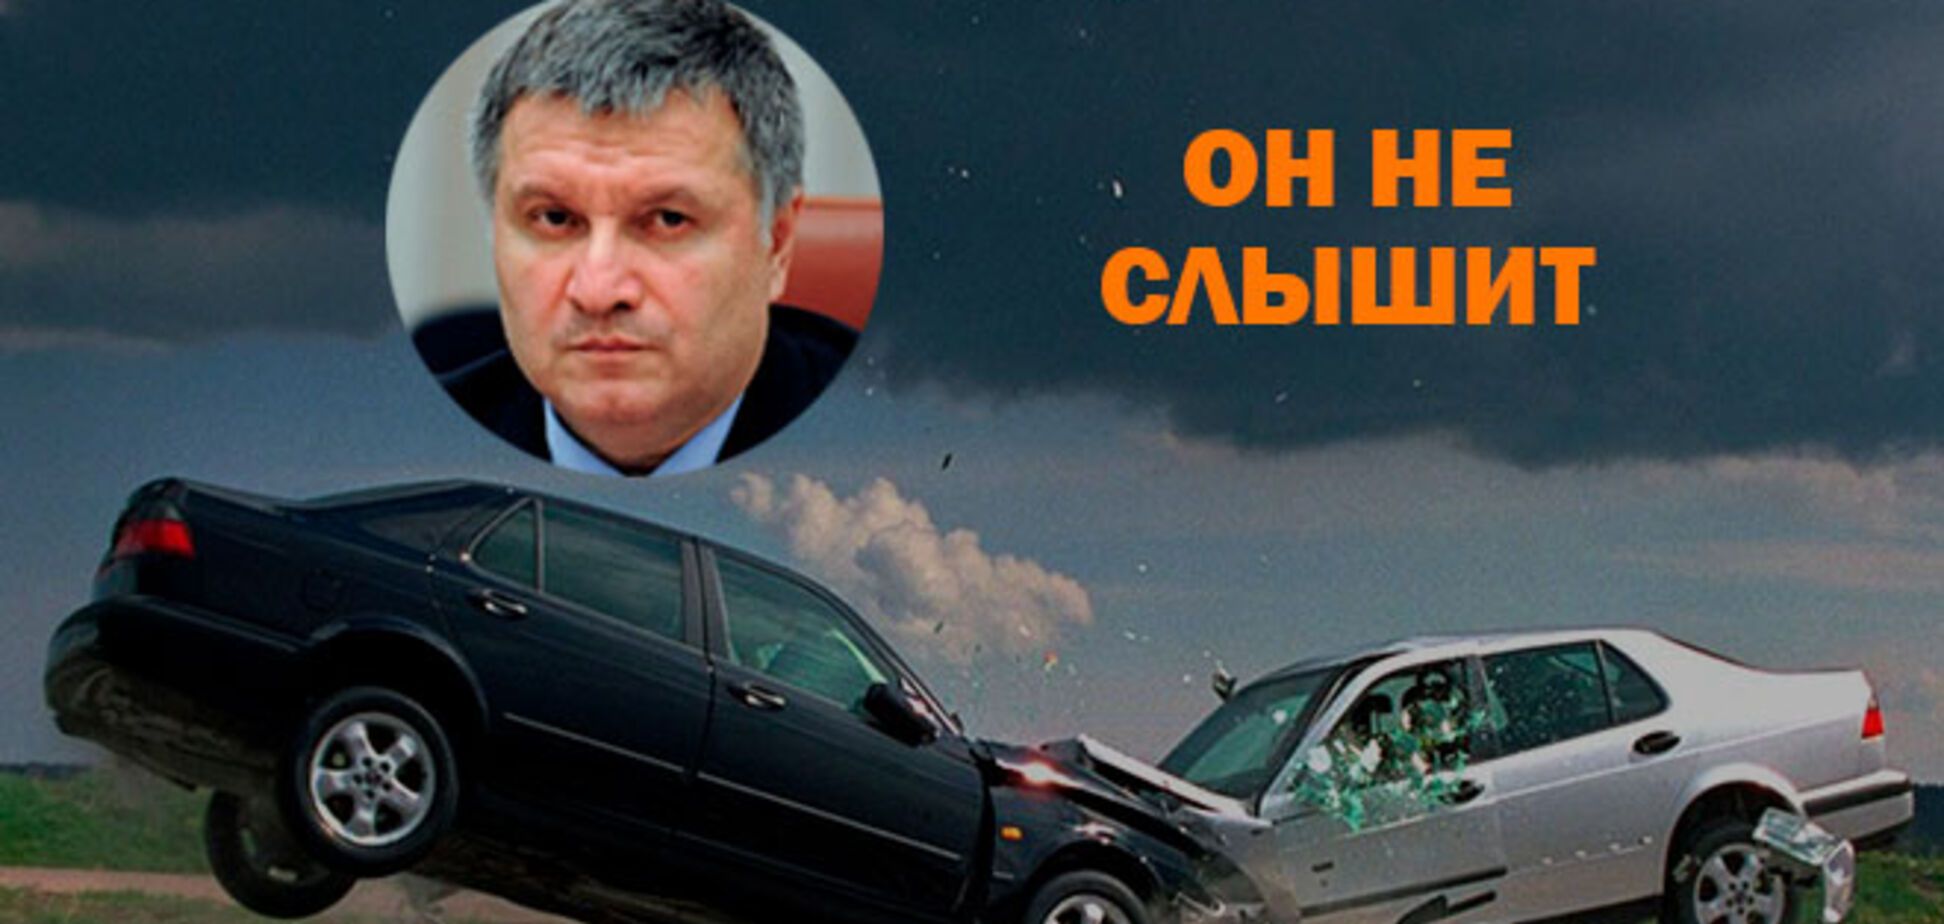 Жуткое ДТП под Харьковом: автомобиль протаранил бус с пассажирами